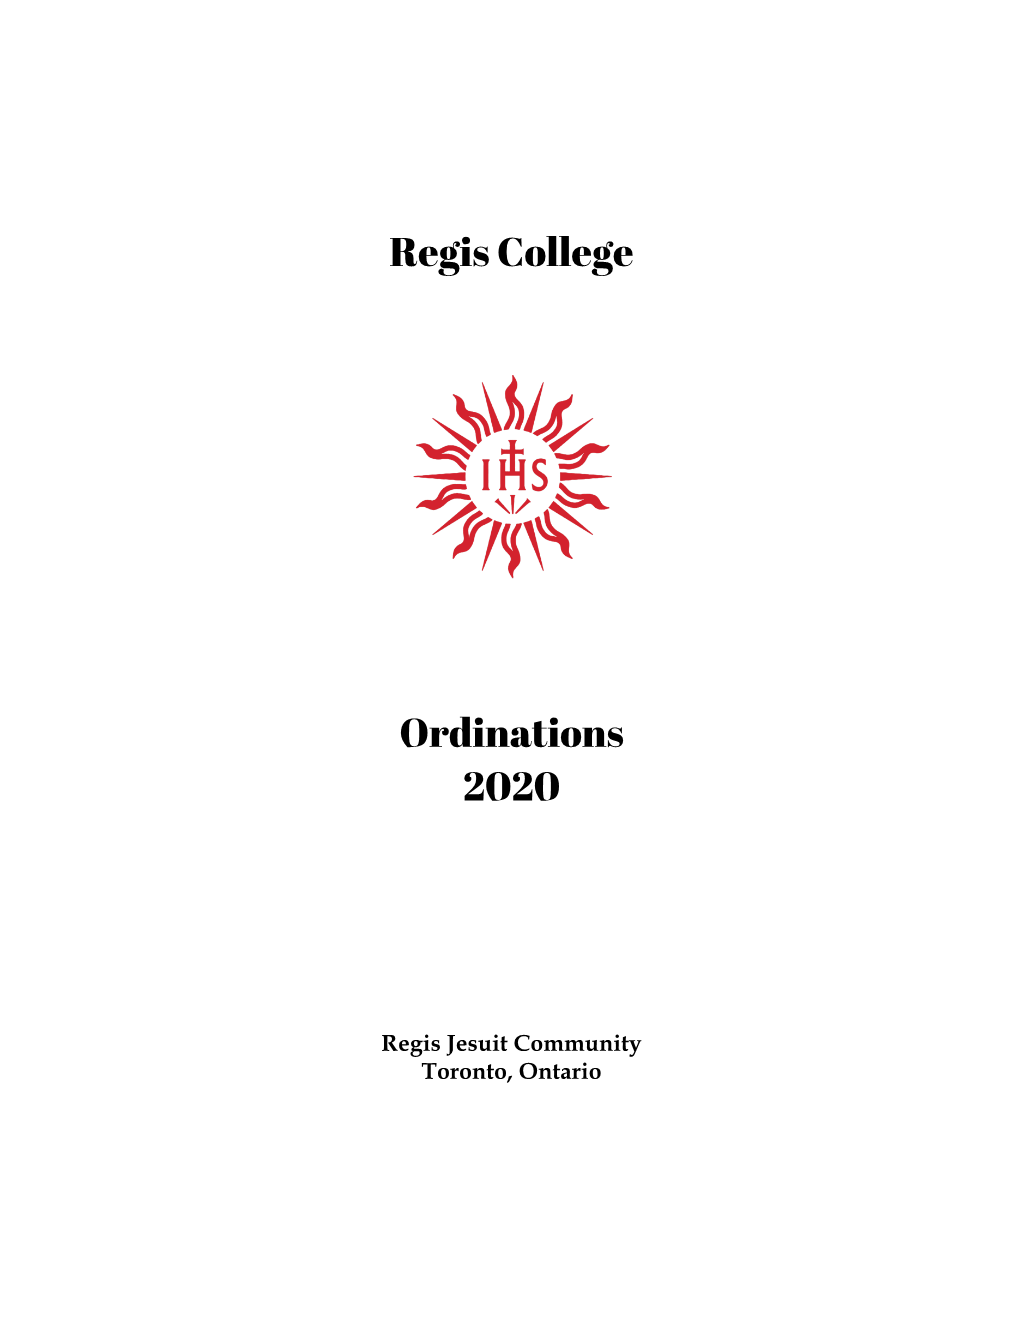 Regis College Ordinations 2020